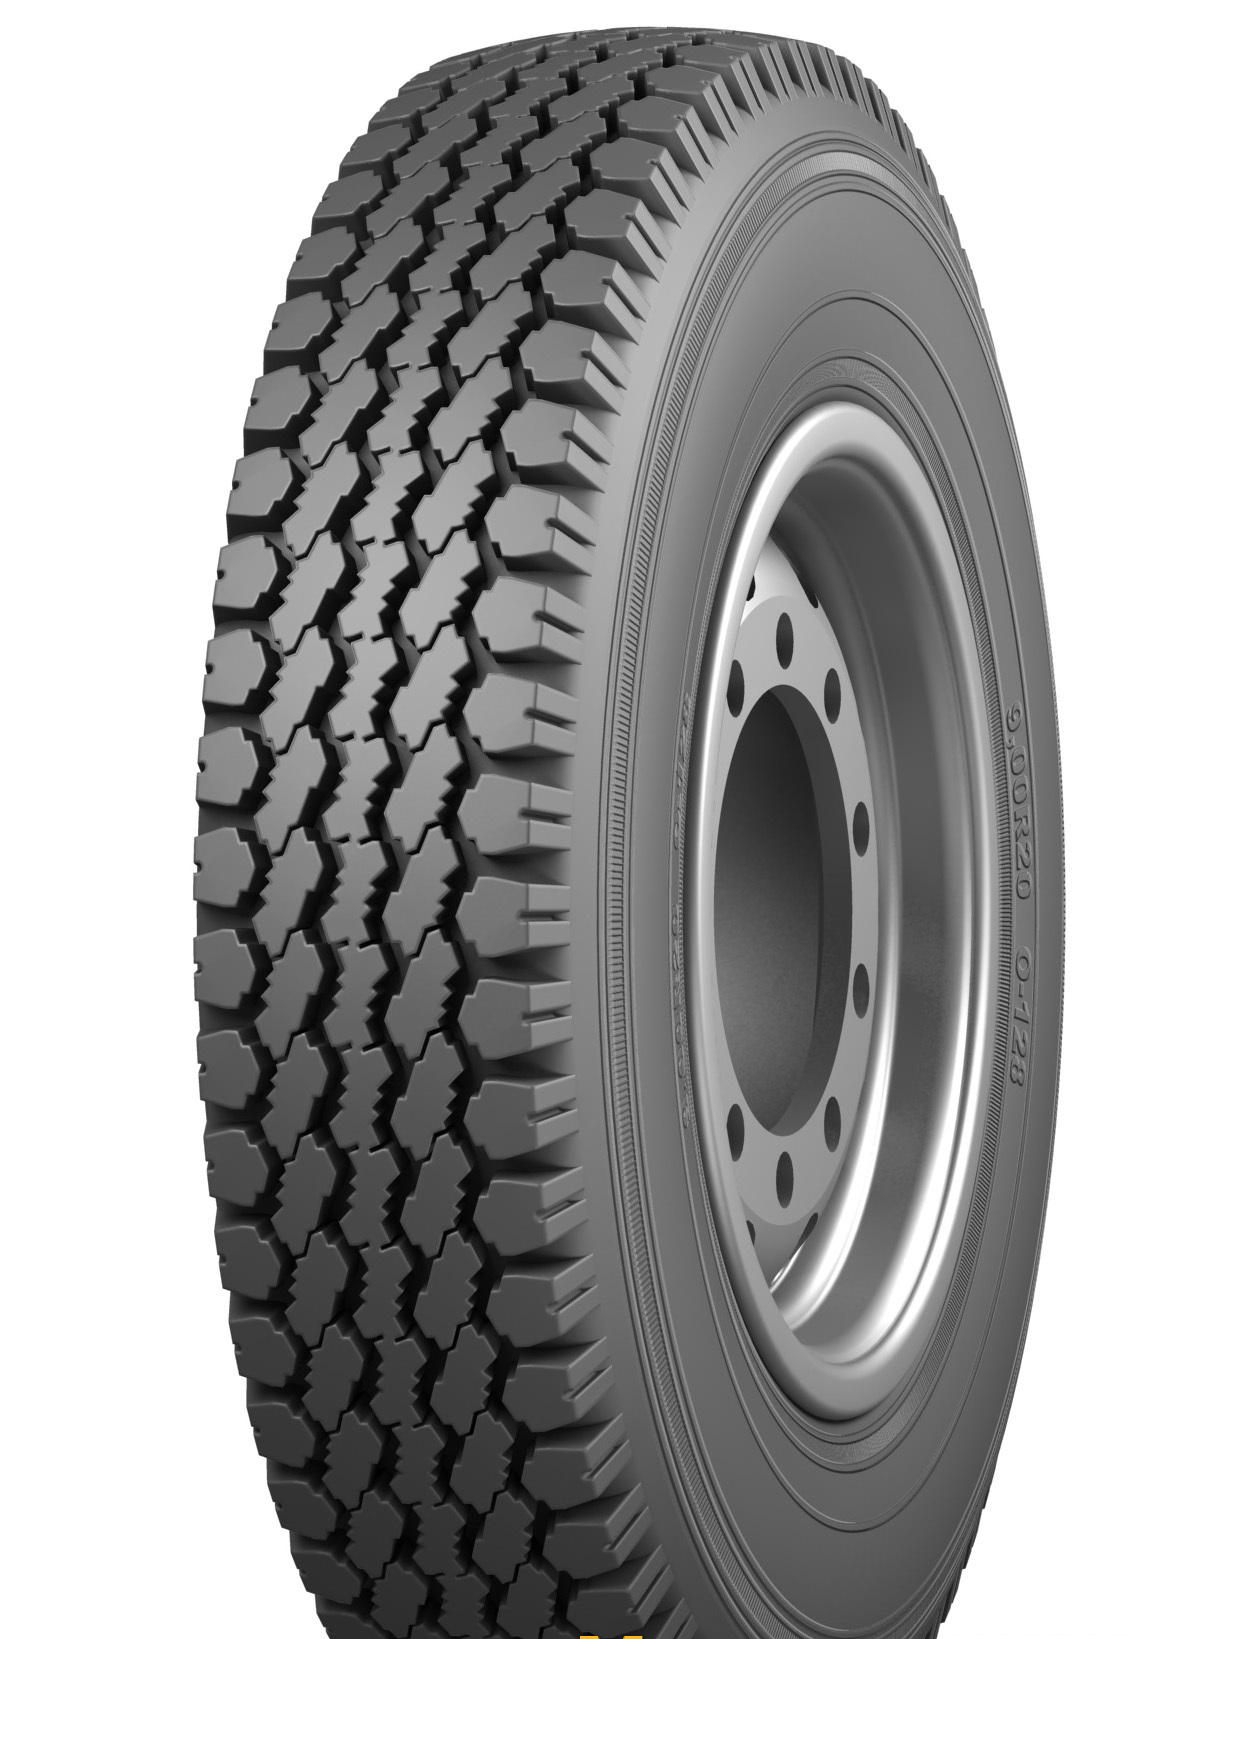 LKW Reifen Tyrex All Steel Mix YA-656 315/80R22.5 156K - Bild, Bilder, Fotos